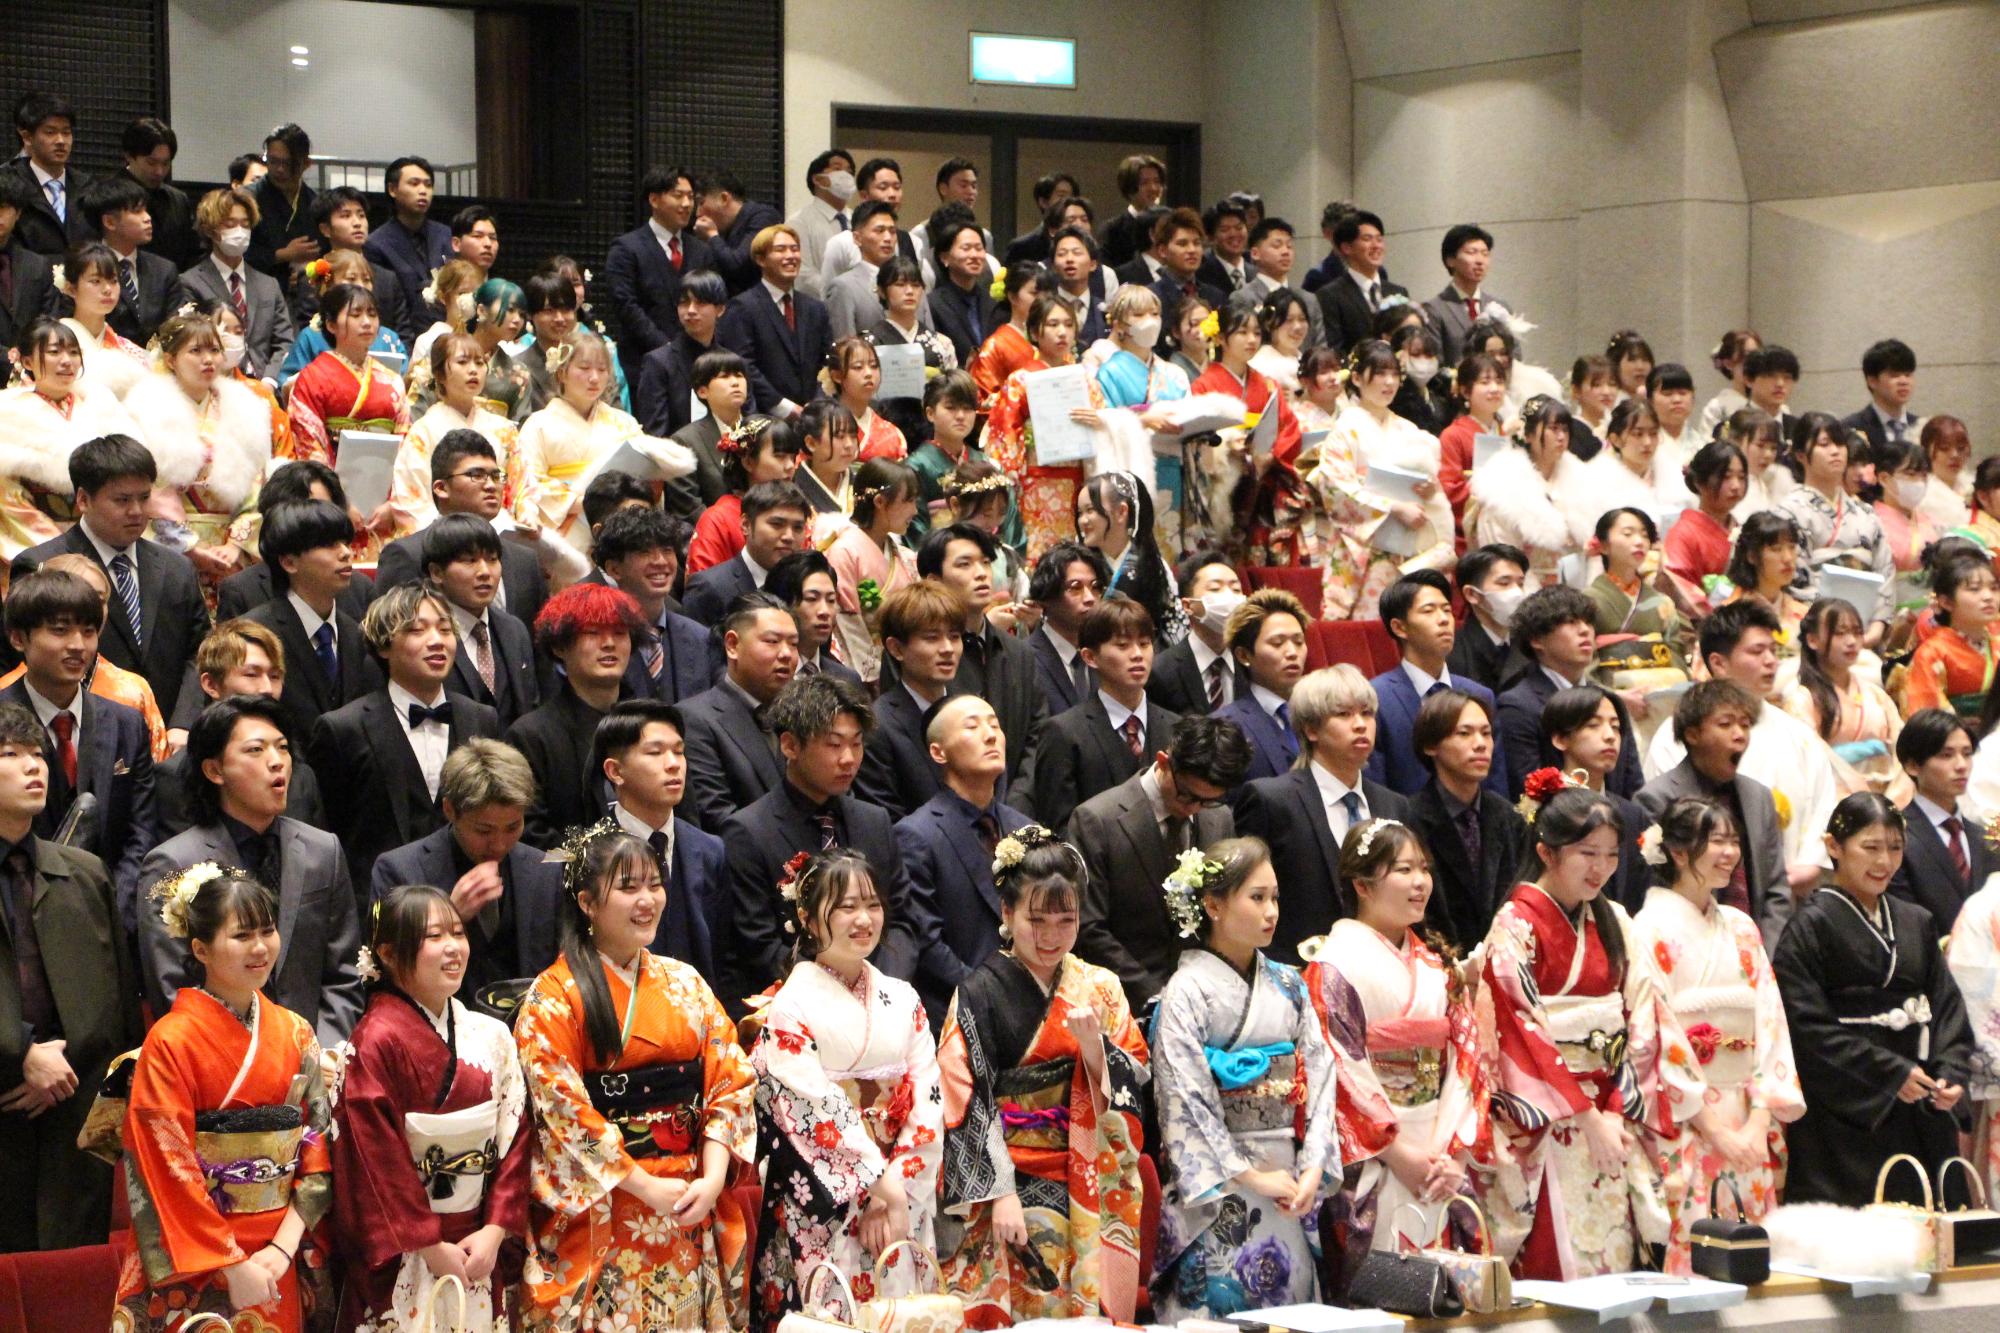 山崎文化会館ホールで式典に臨む20歳の新成人らが並んで立っている写真